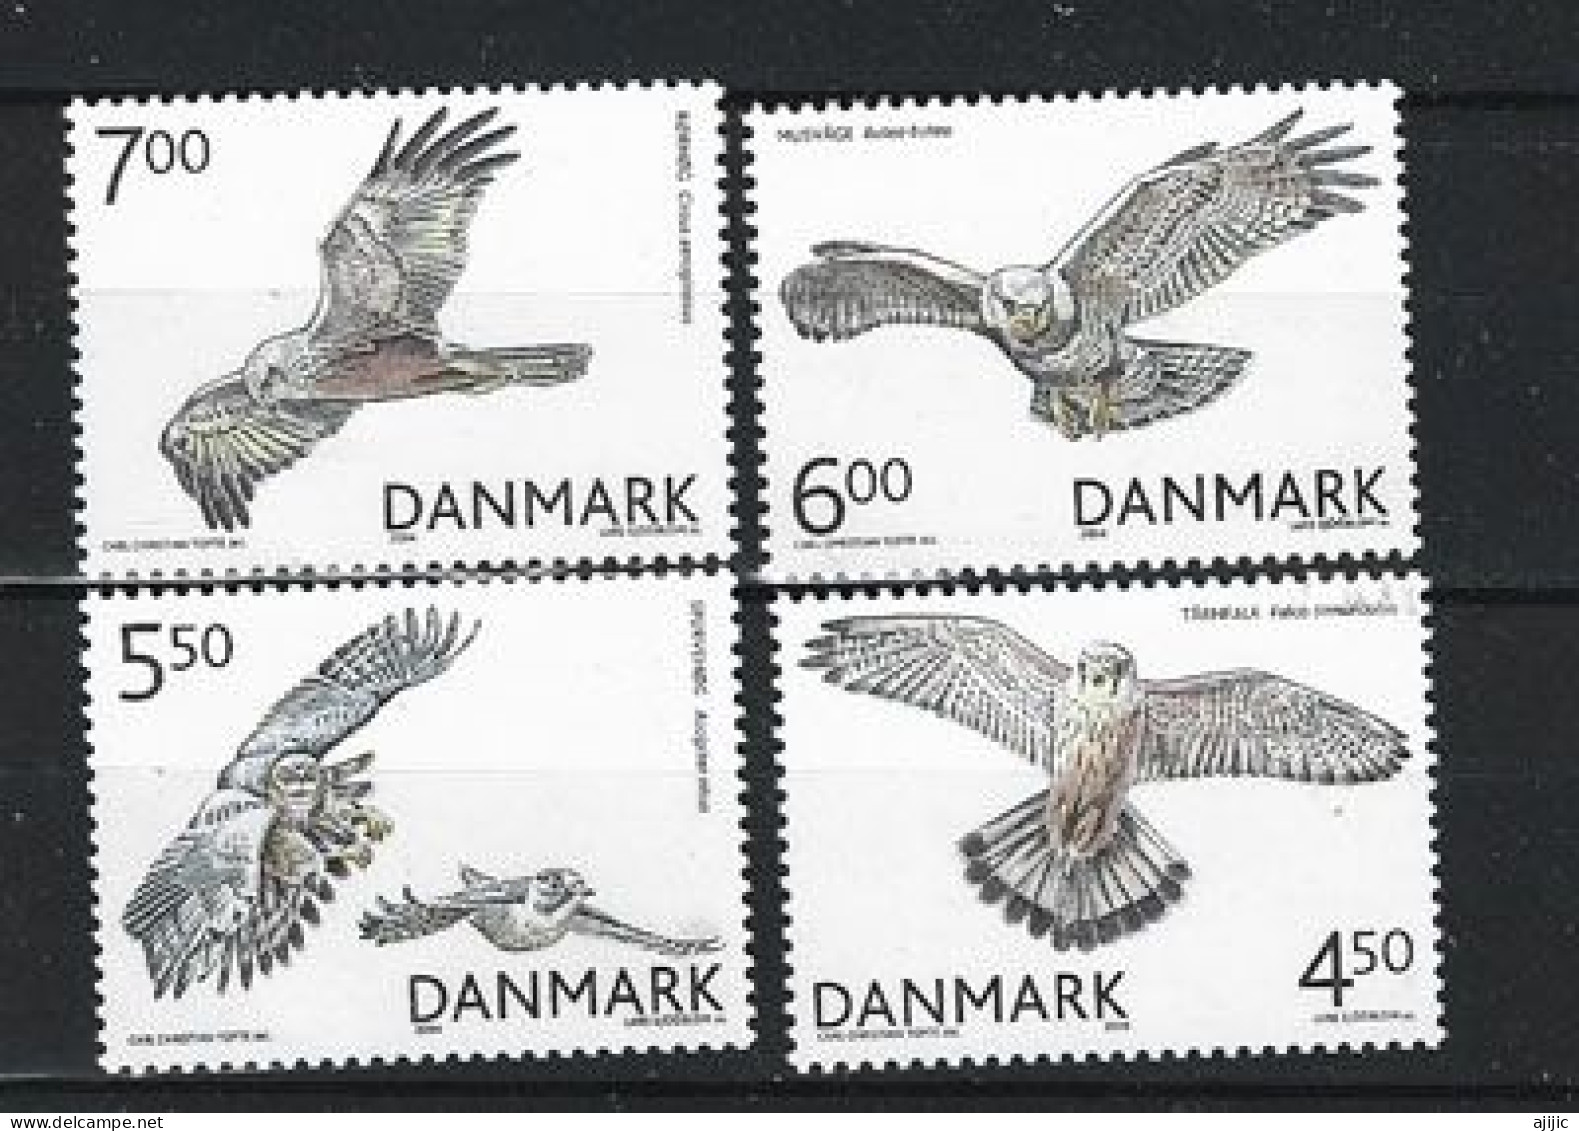 DANEMARK. Oiseaux De Proie / Rapaces Du Danemark. Série Complète 4 Timbres Neufs **  Année 2004 - Ungebraucht